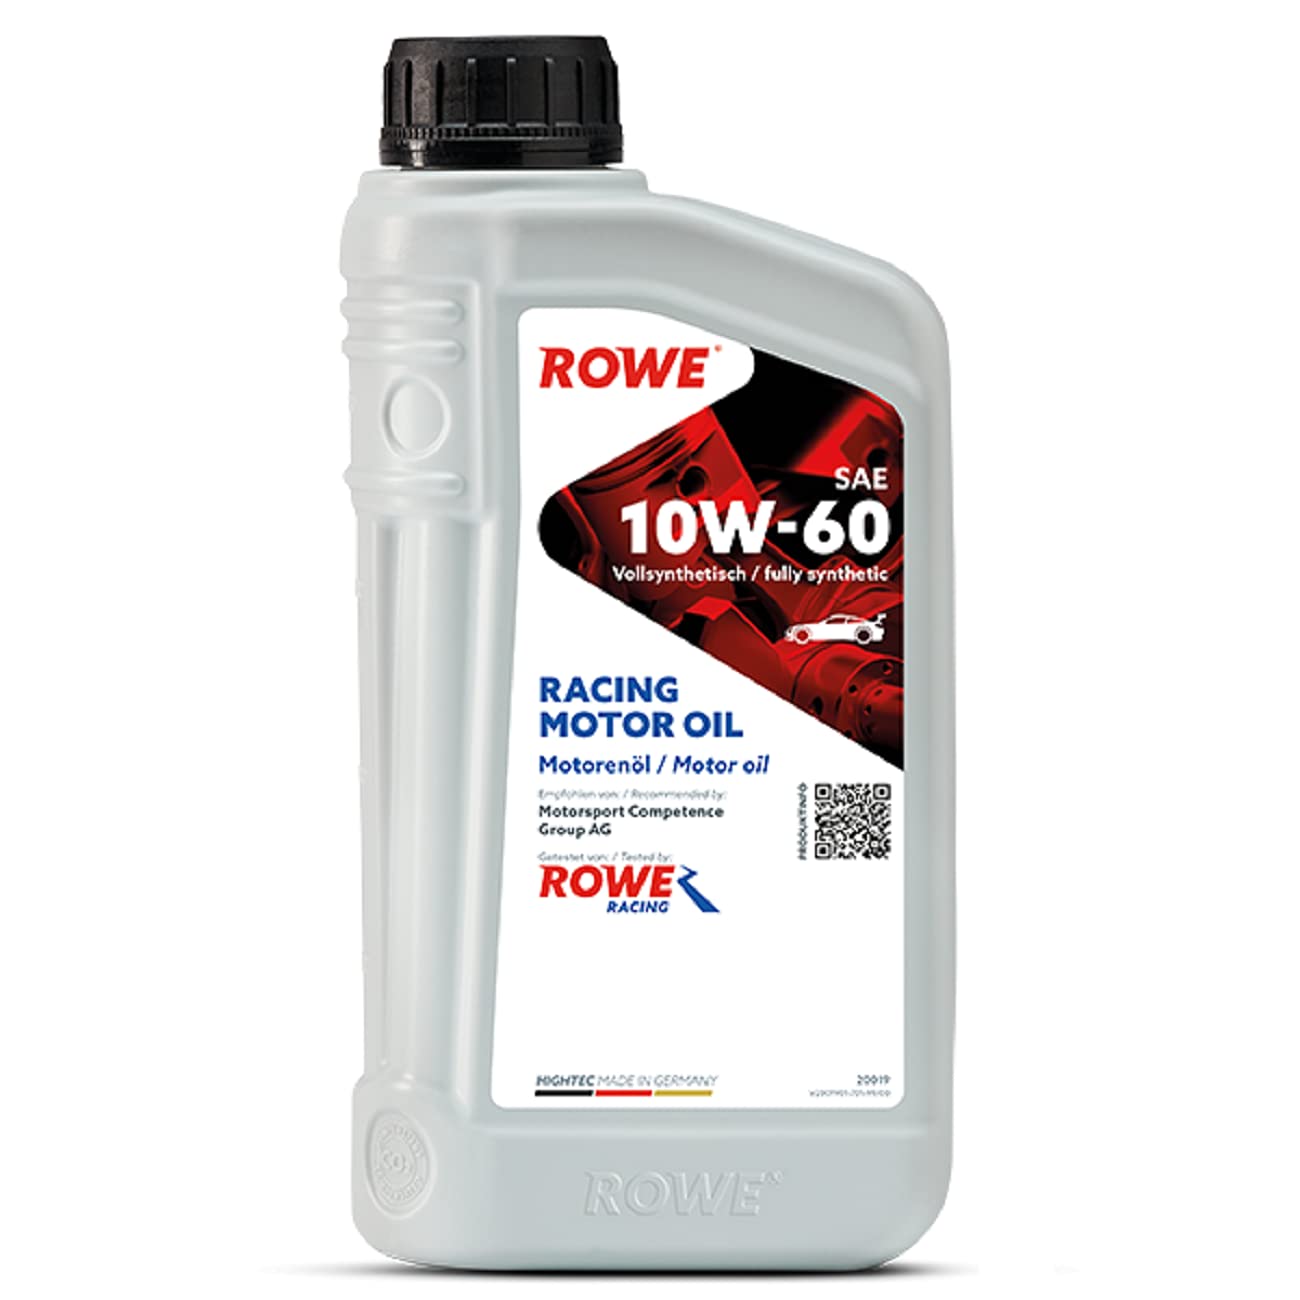 ROWE Hightec Racing Motor Oil SAE 10W-60, 1 Liter von ROWE